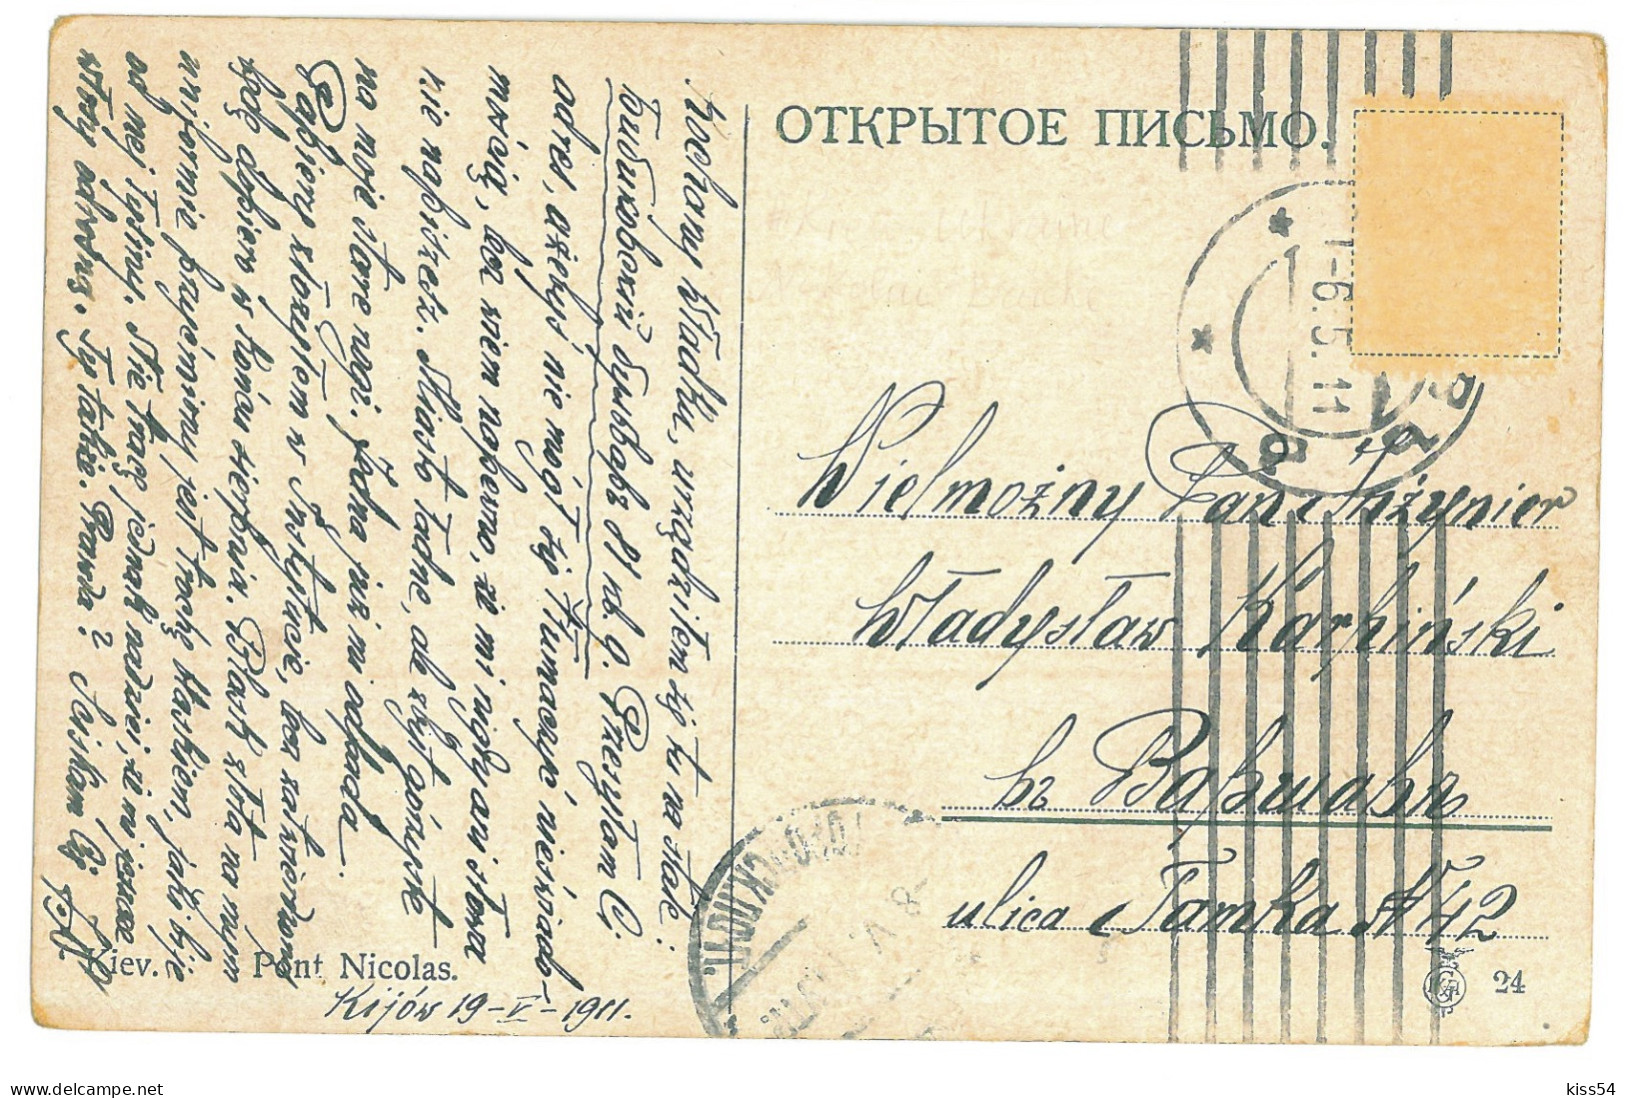 UK 11 - 23303 KIEV, The NICHOLAS CHAIN Bridge, Ukraine - Old Postcard - Used - 1911 - Ukraine